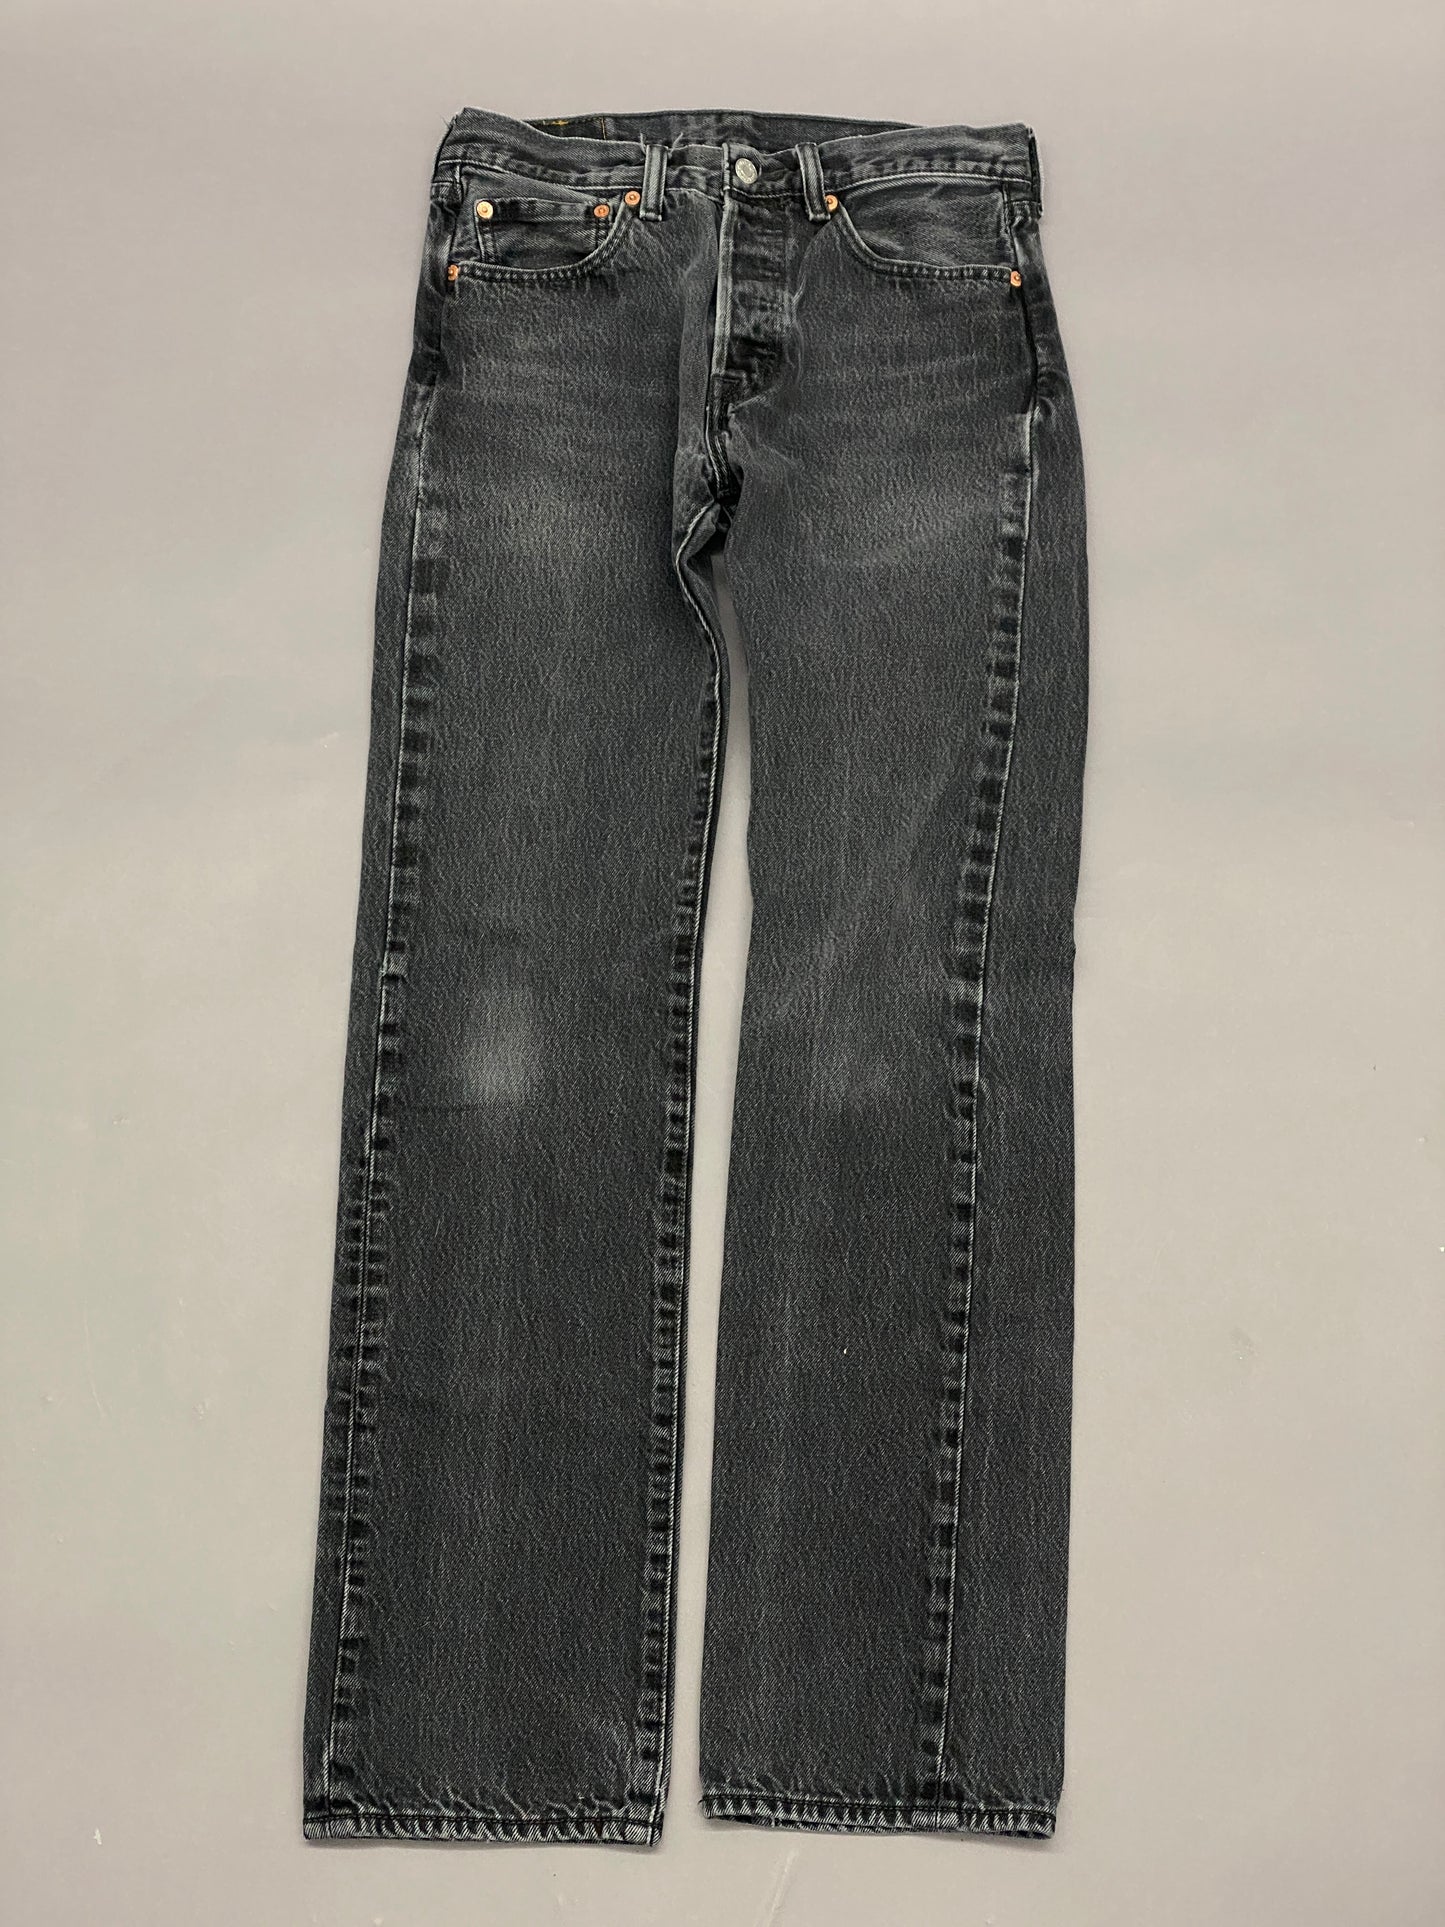 Levis 501 Vintage Jeans - 31x36